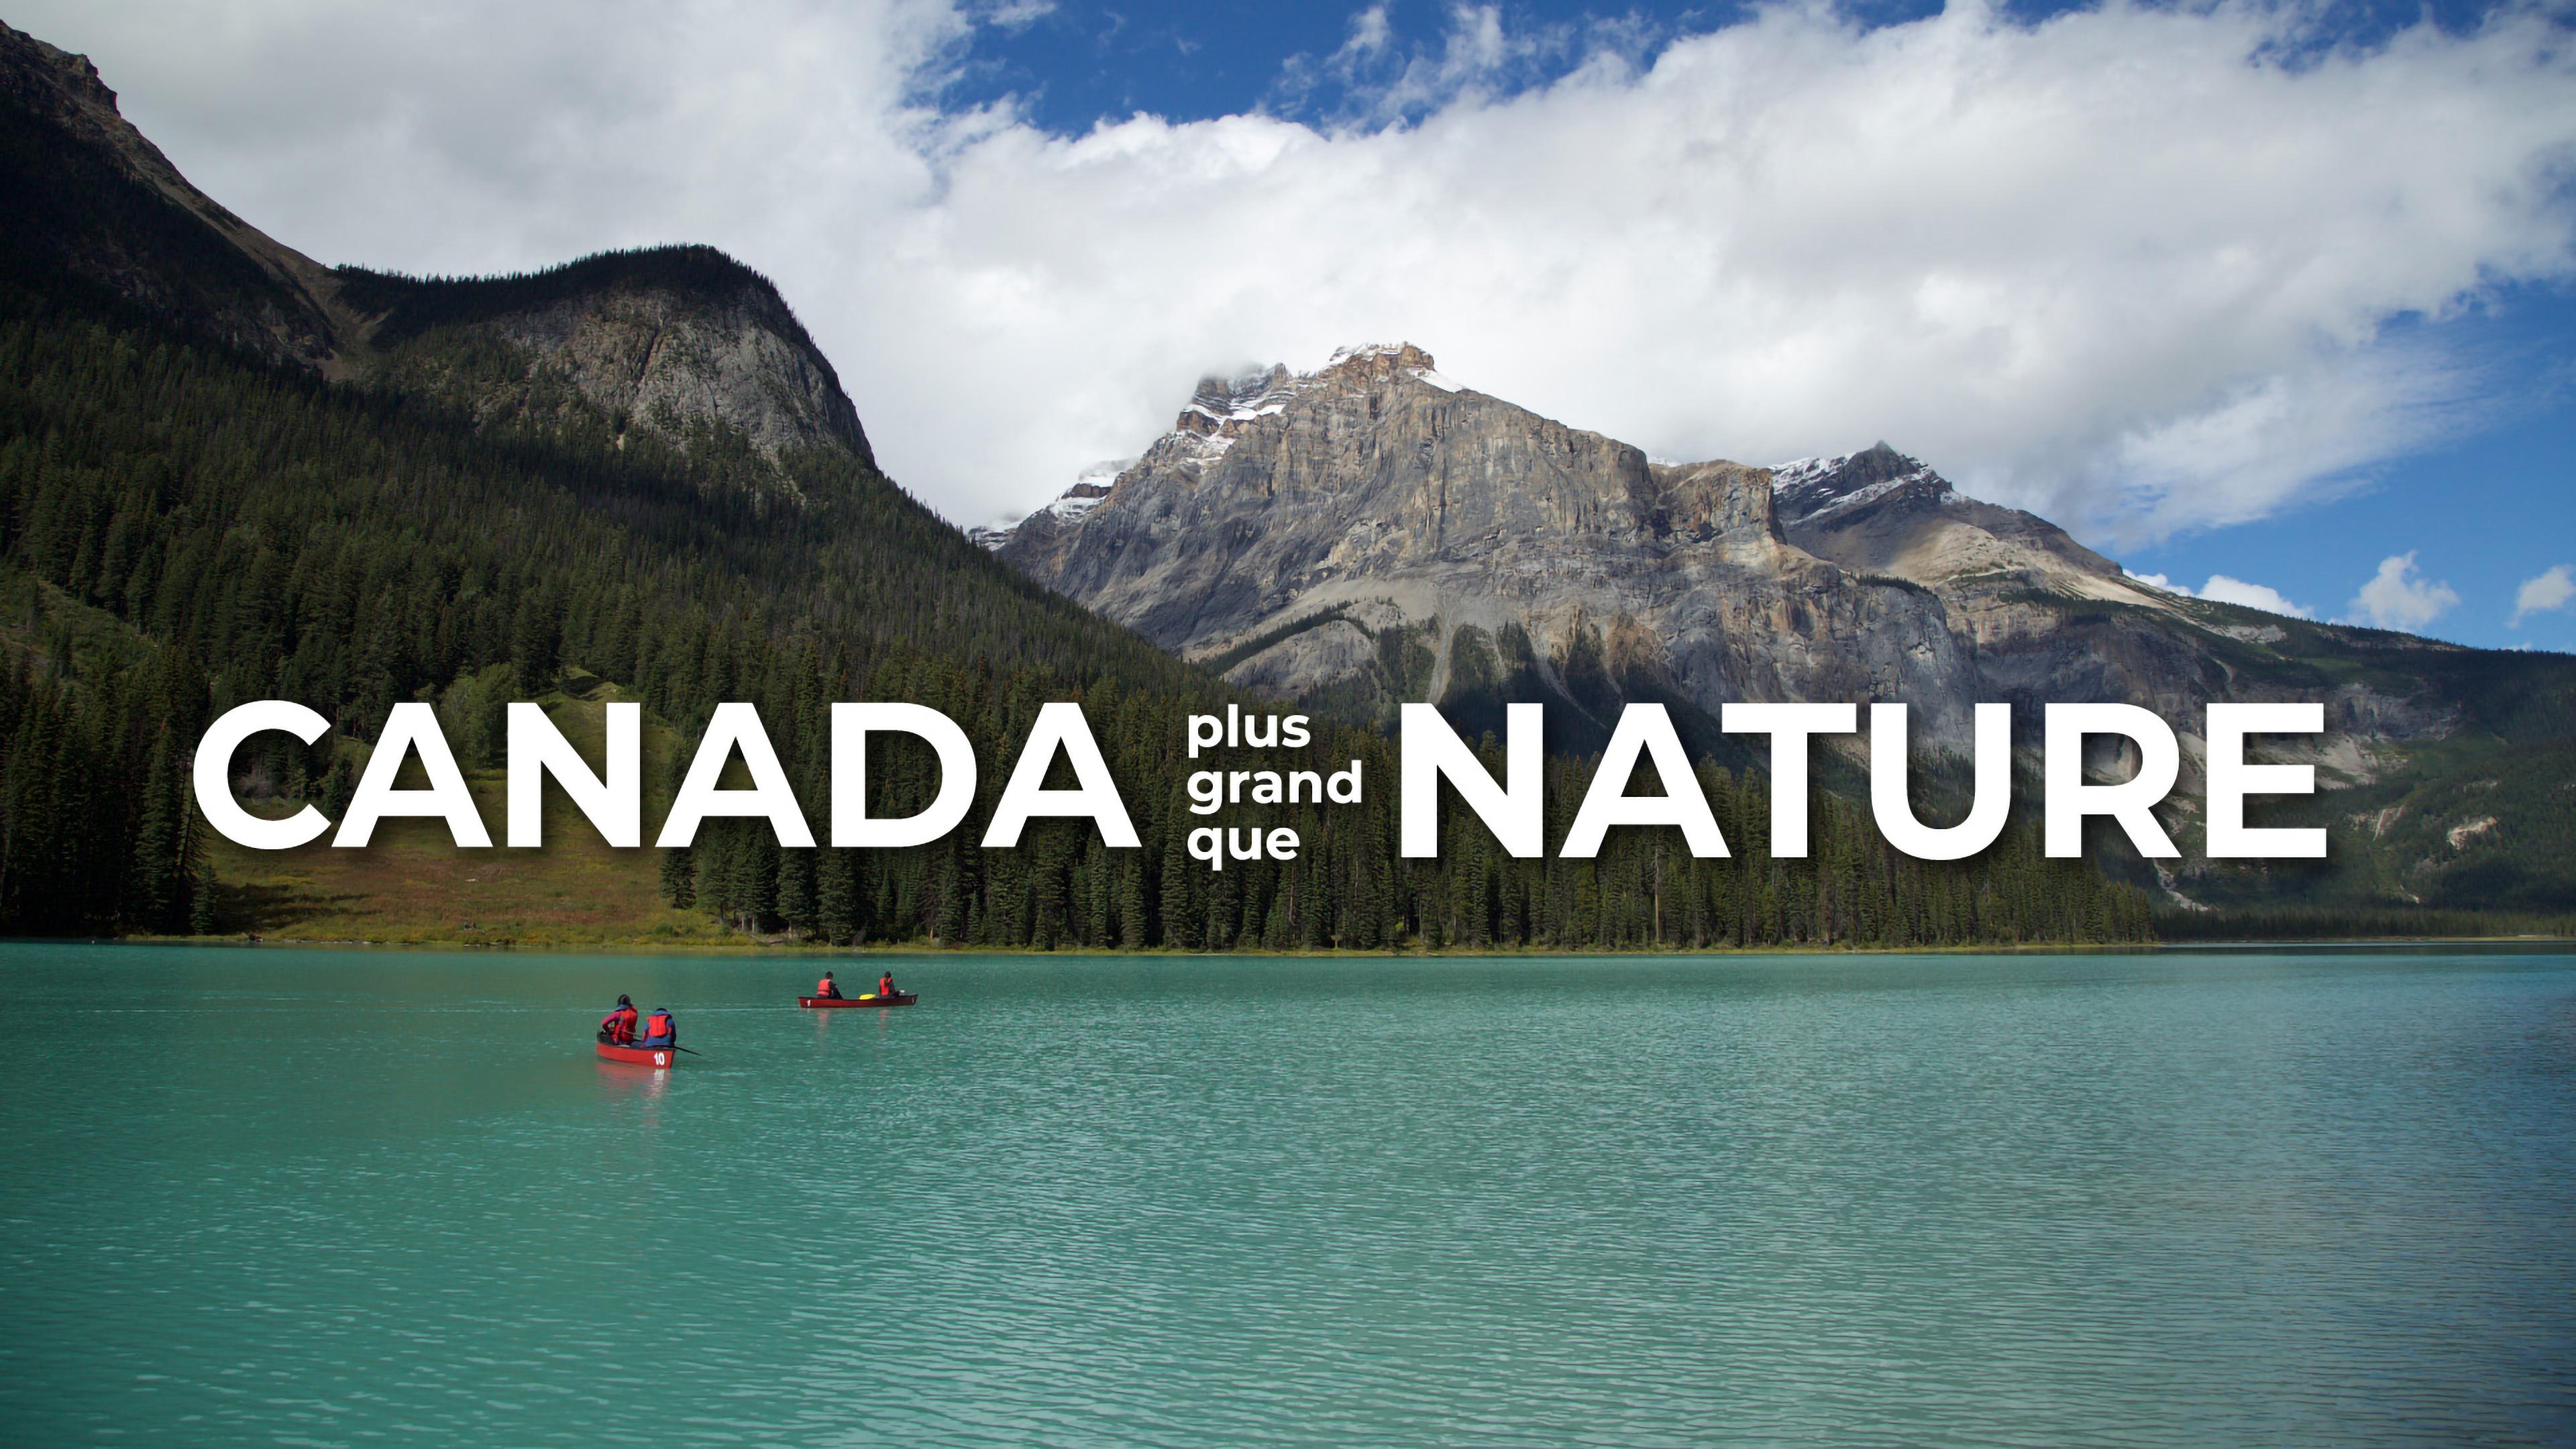 Canada plus grand que nature